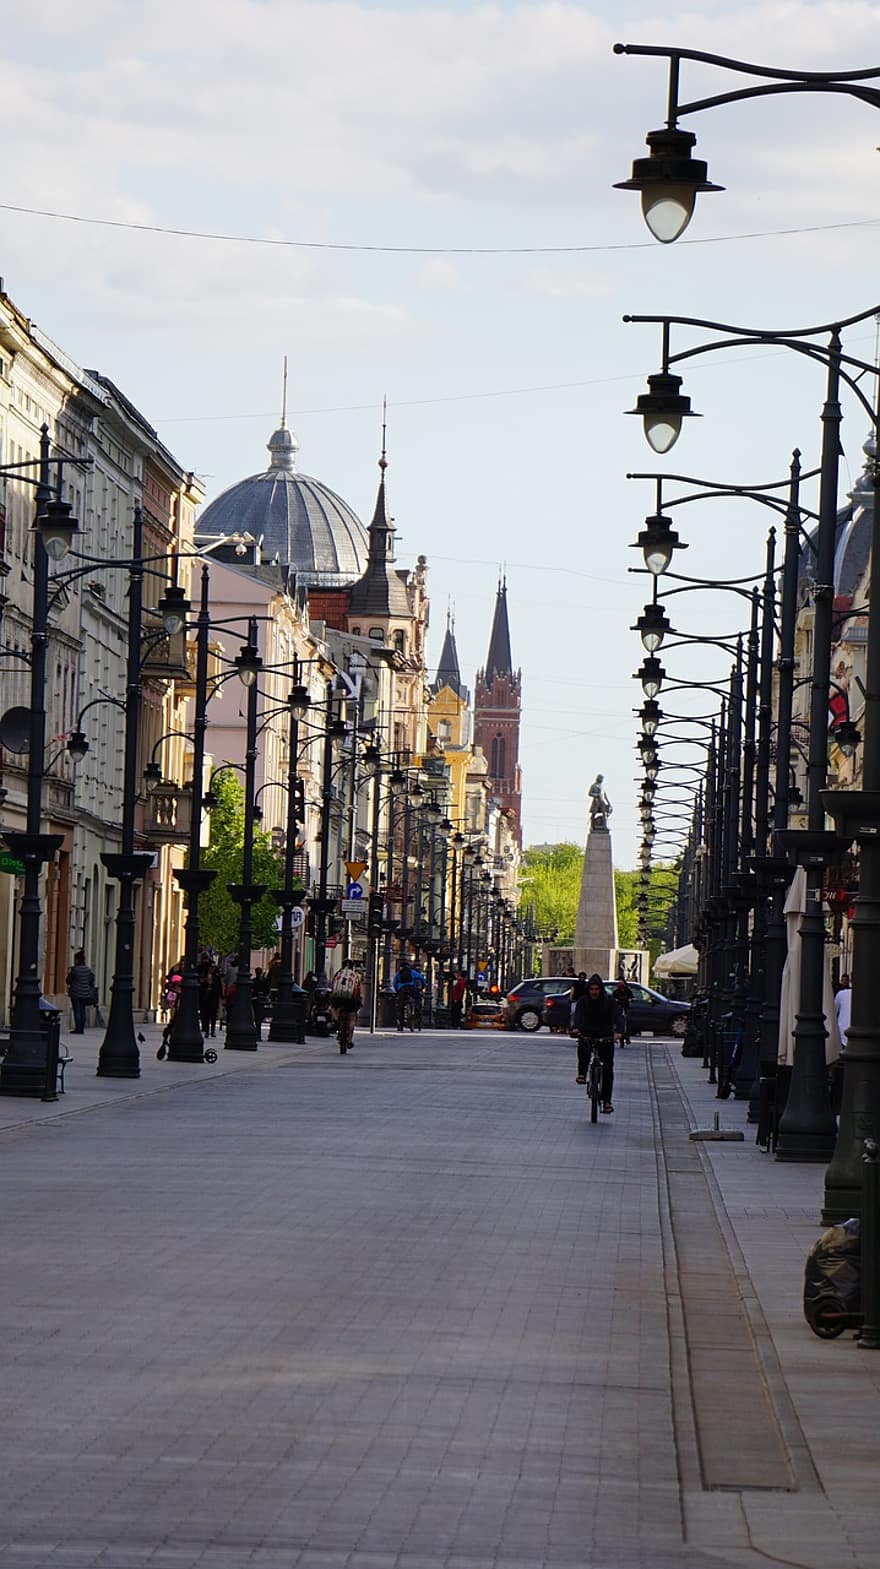 Piotrkowska, calle, ciudad, luces de la calle, Lámparas de la calle, ciclista, gente, viajeros, fotografía callejera, Łódź, edificios